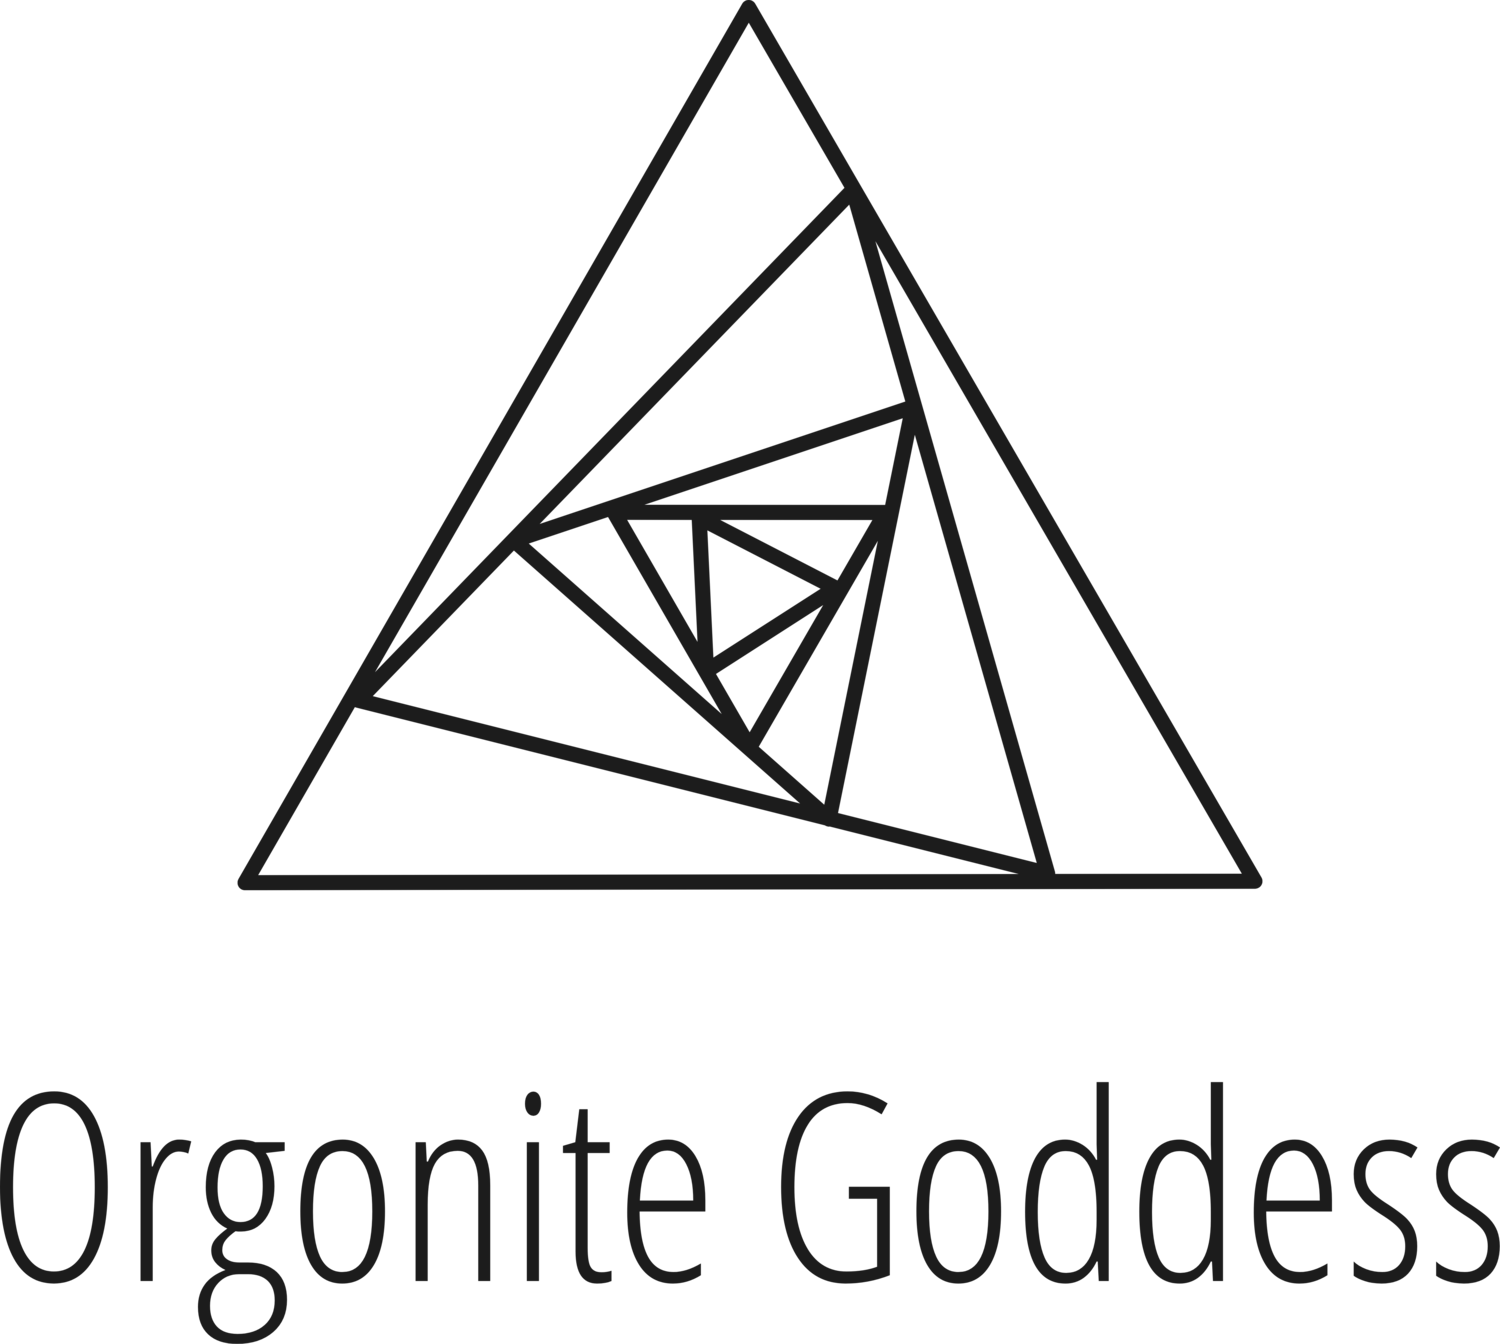 Orgonite Goddess